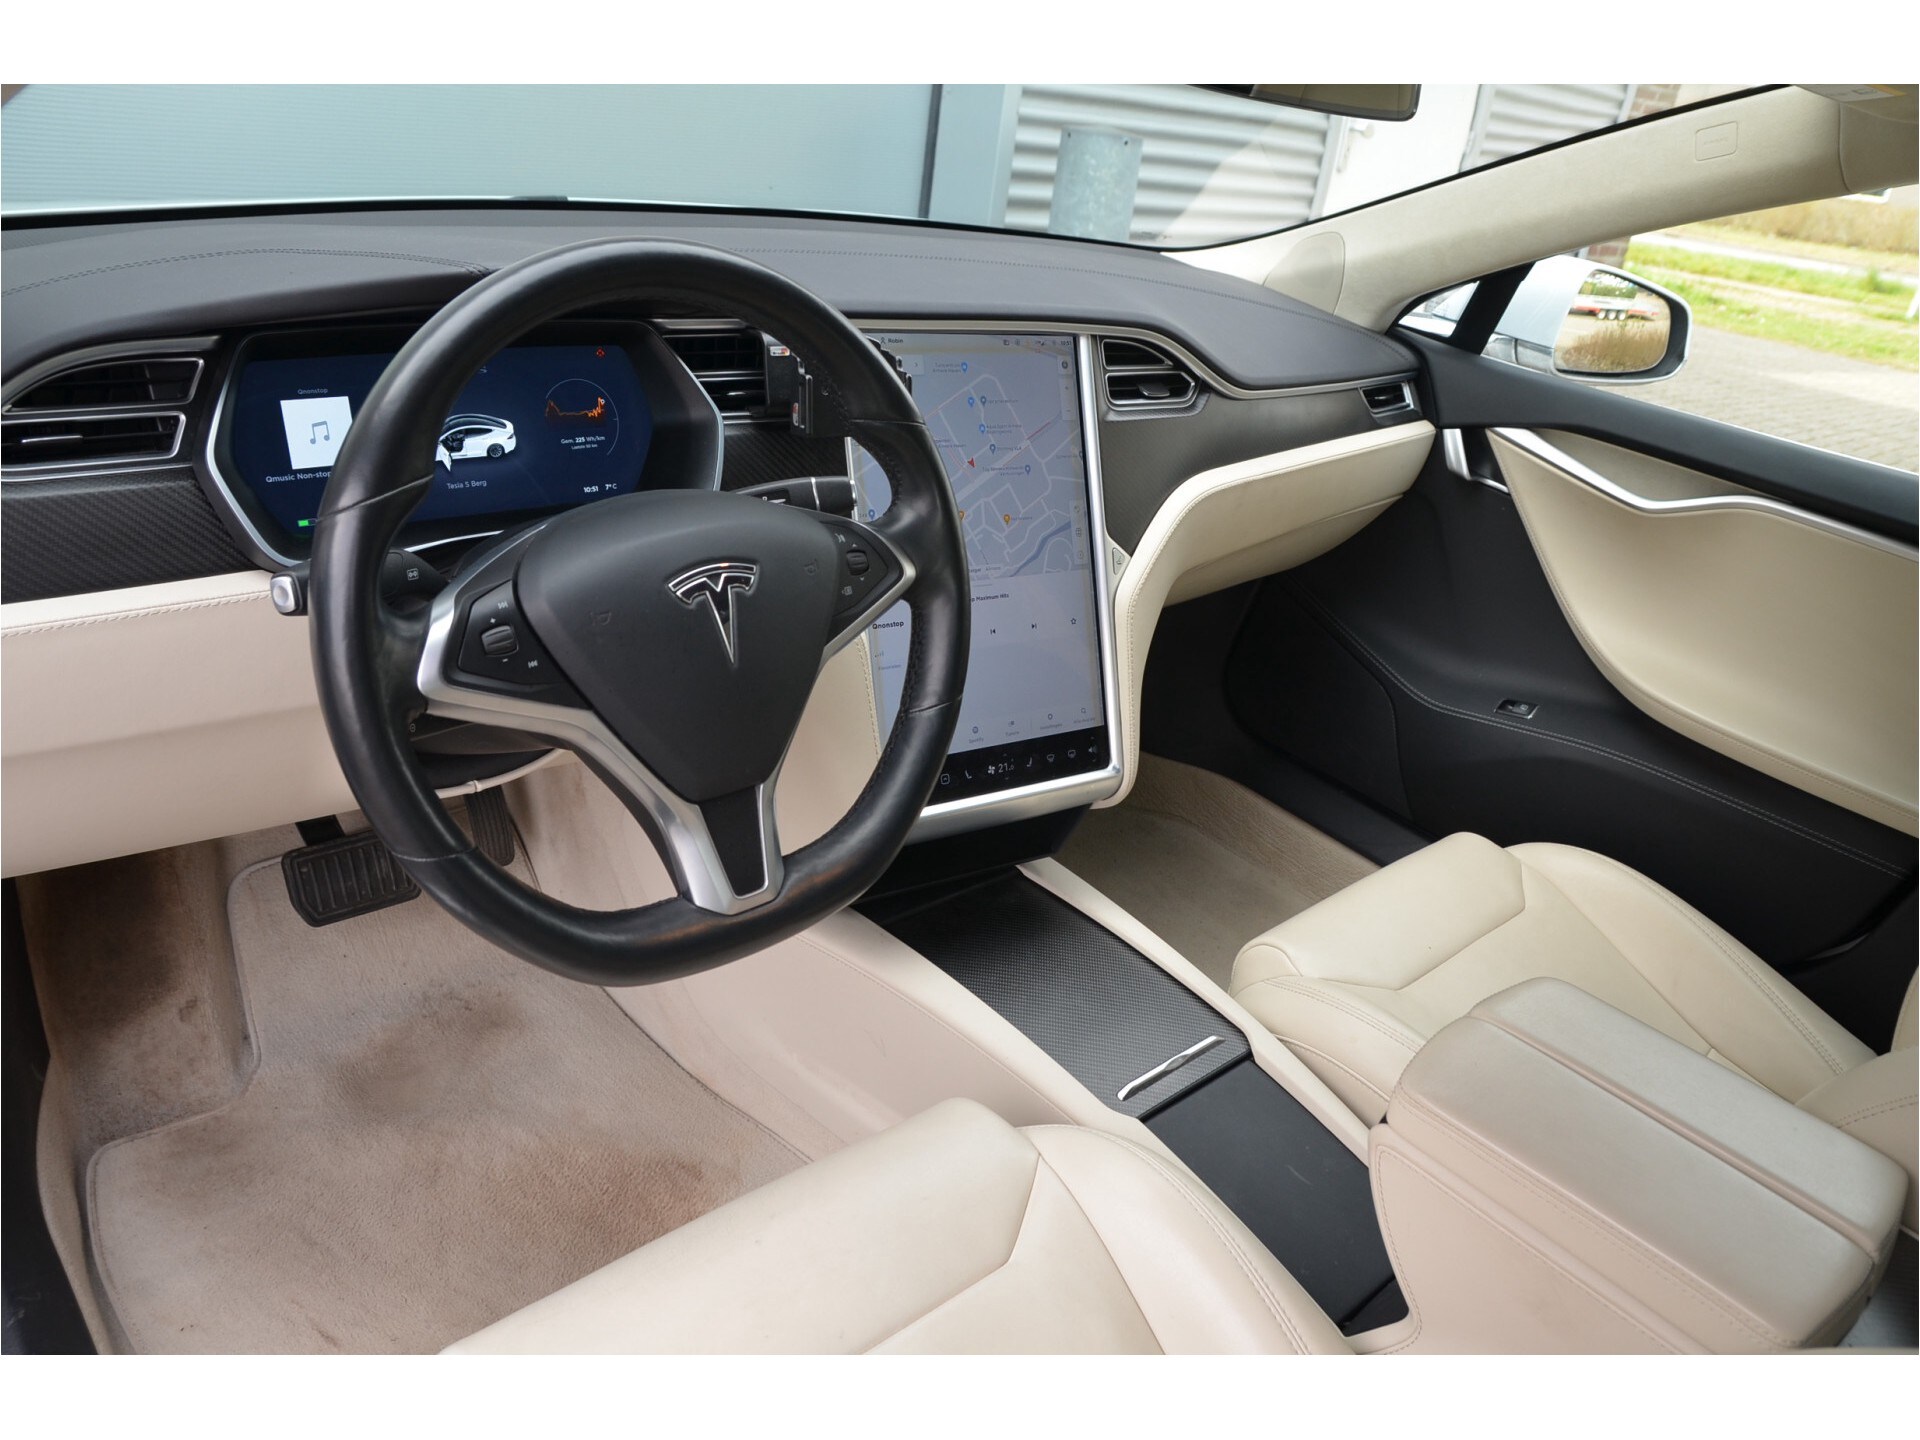 Tesla Model S 100D AutoPilot3.0+FSD, Rijklaar prijs